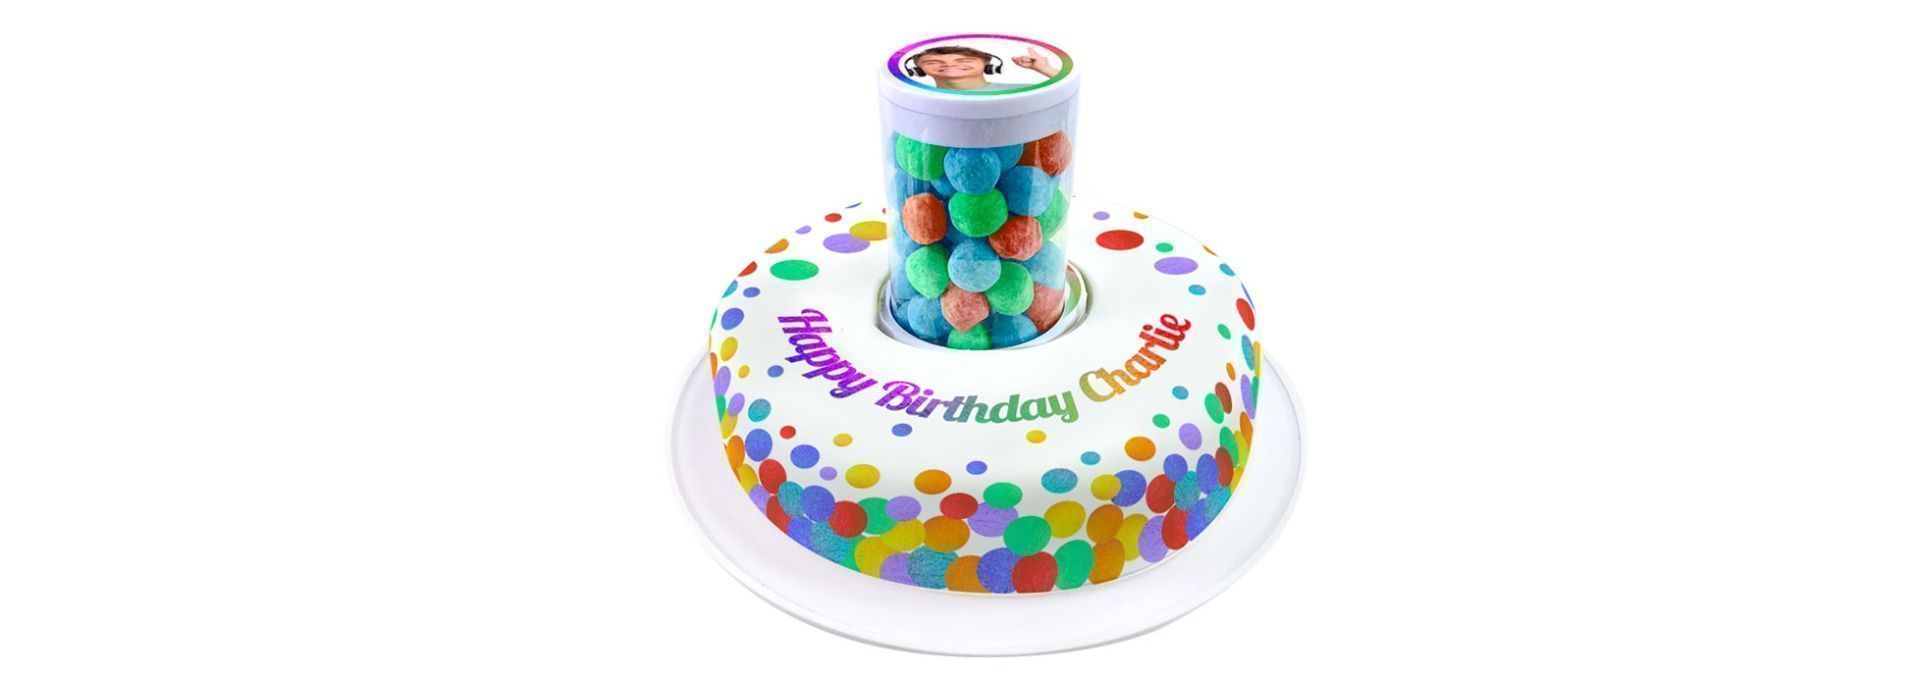 Surprise birthday cake